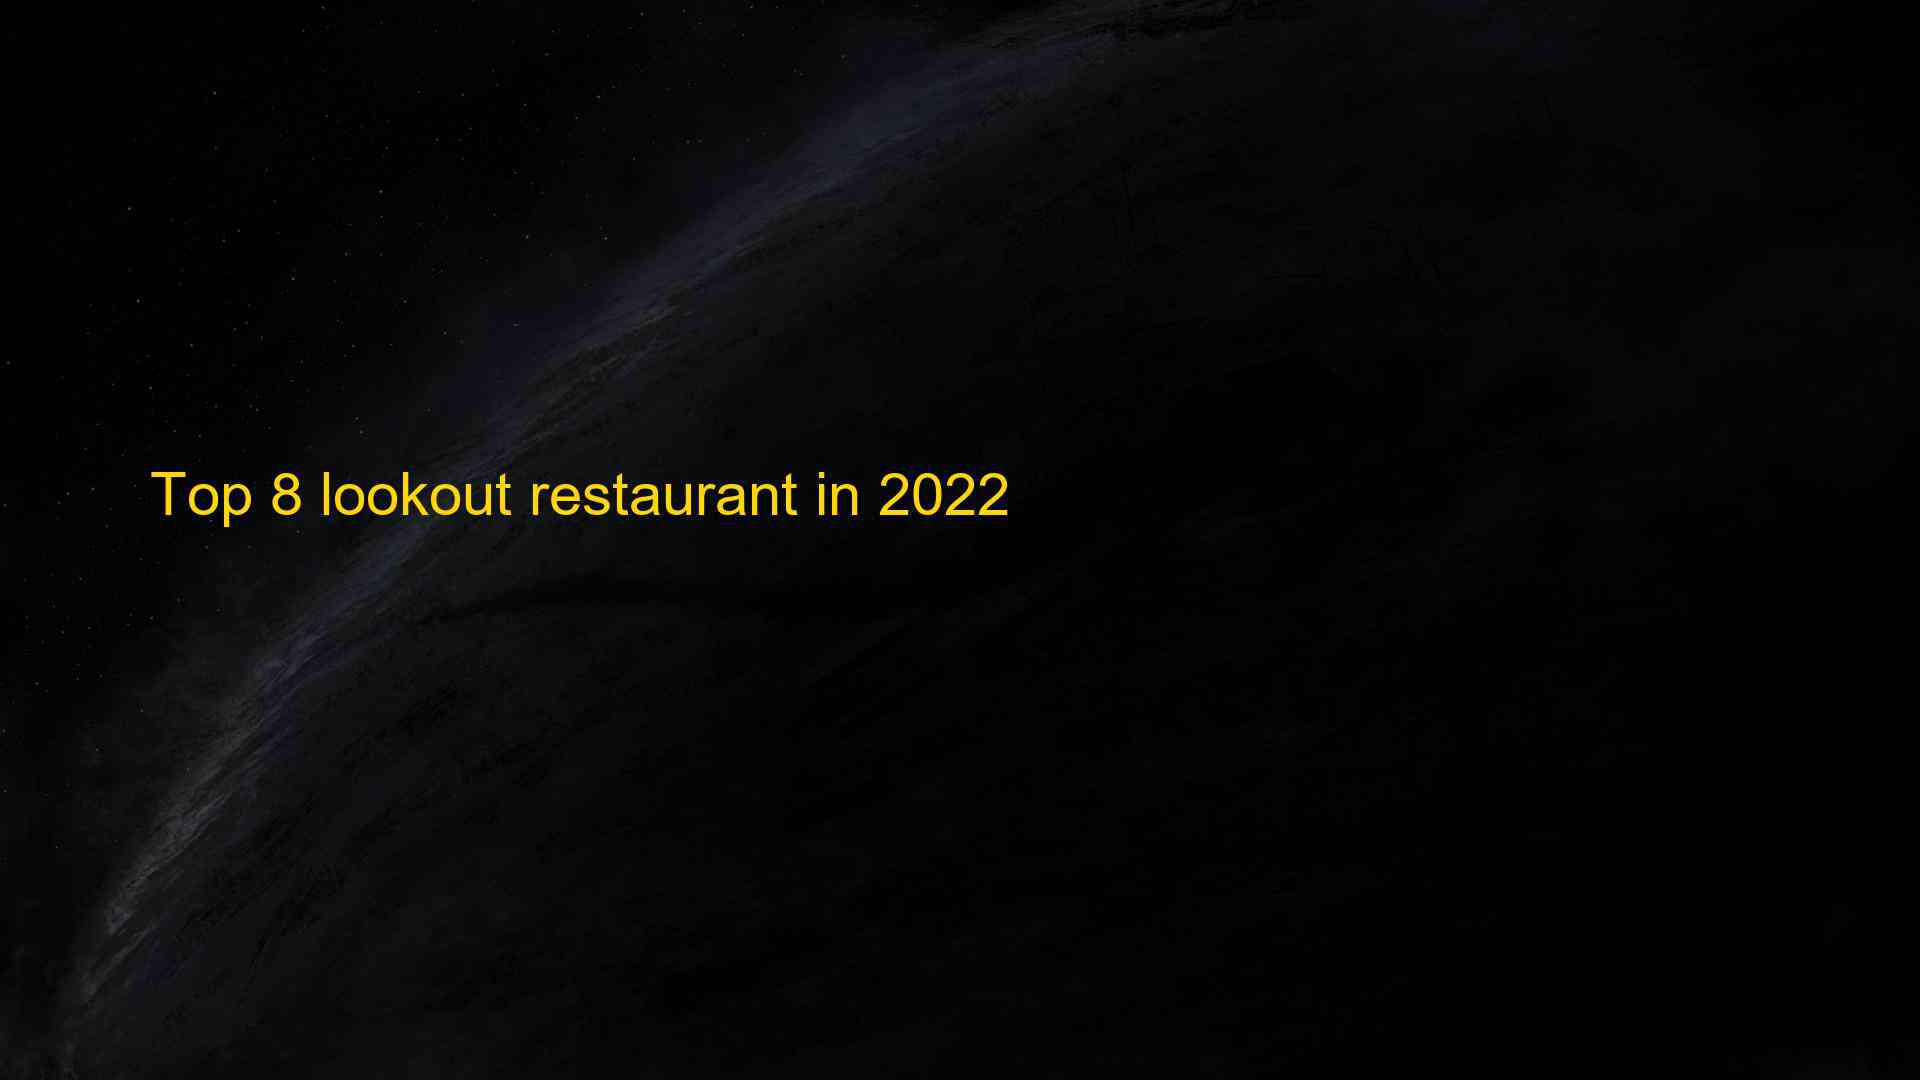 Top 8 lookout restaurant in 2022 1662965595